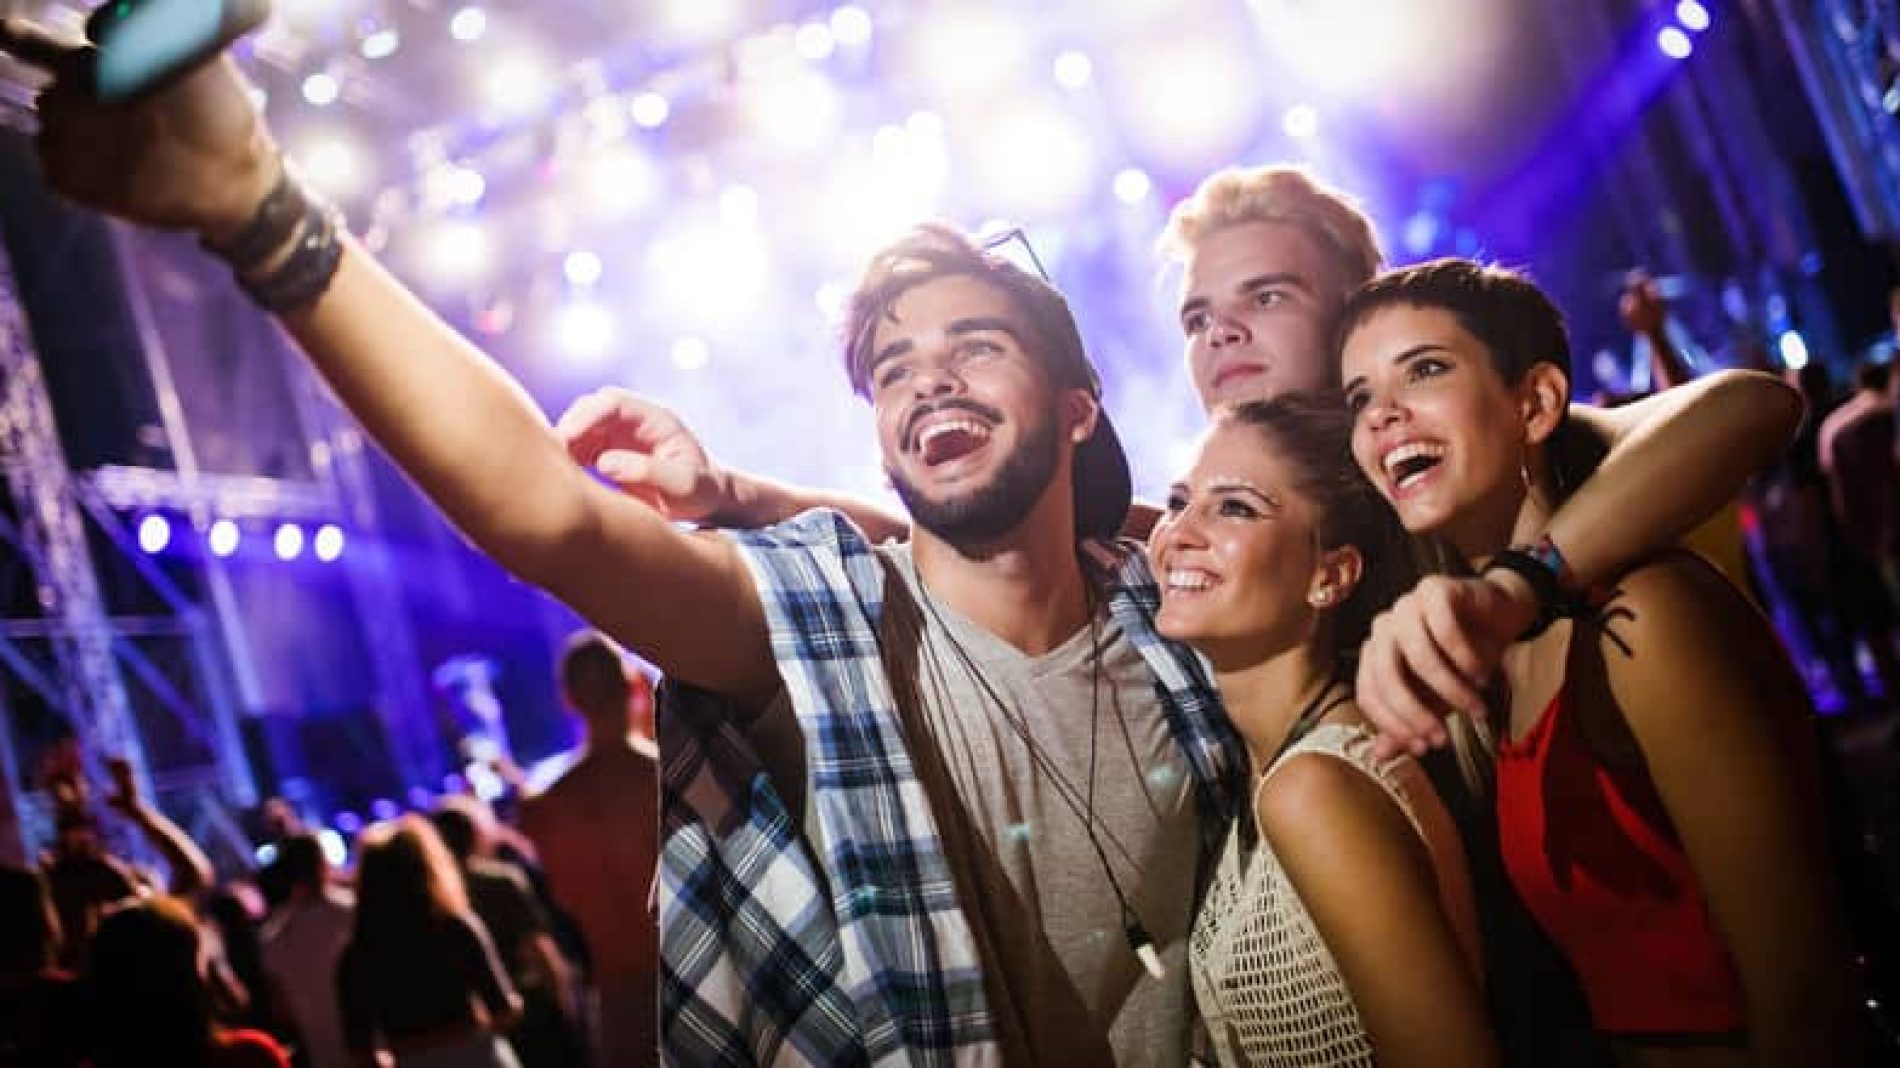 group-selfie-in-a-night-club